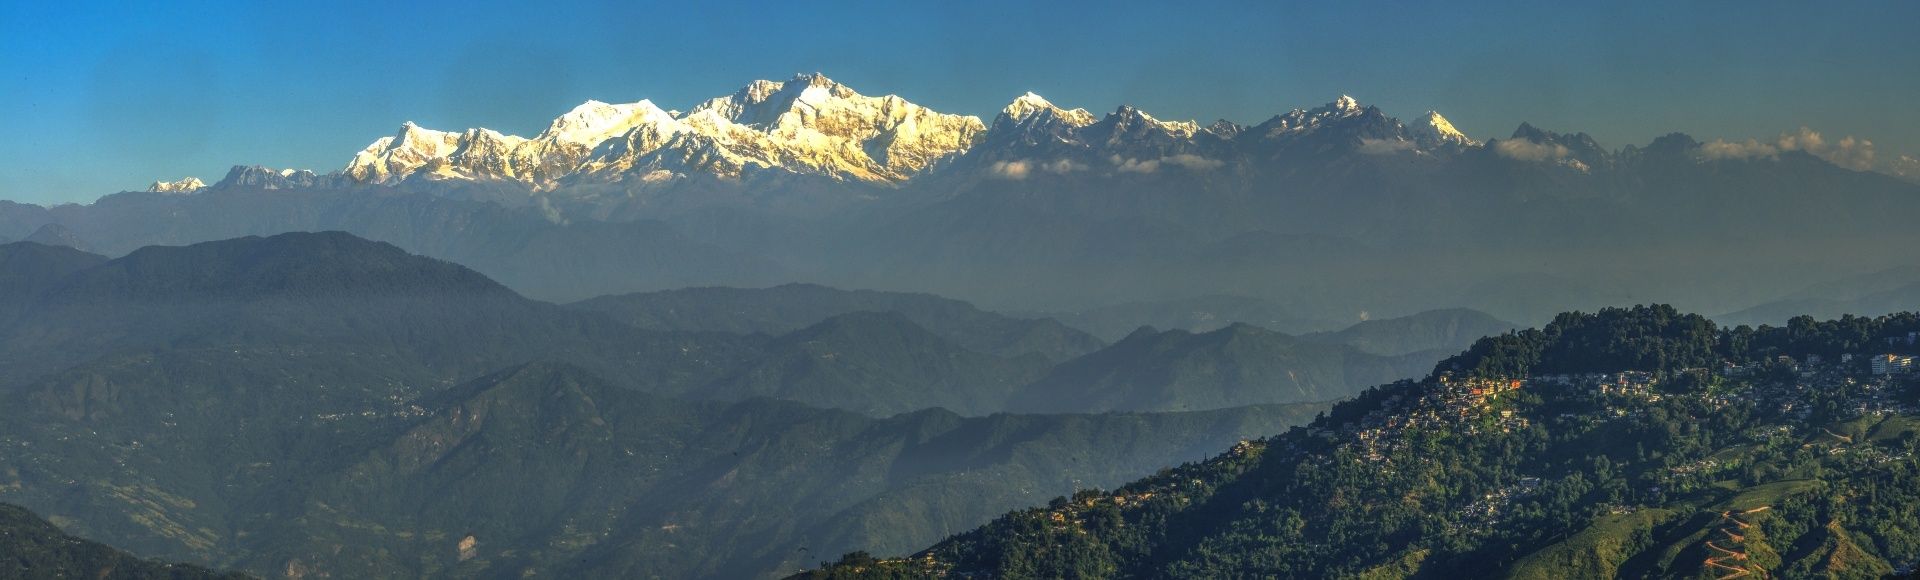 Panorama d'un paysage de montagne indien où l'on cultive le thé.